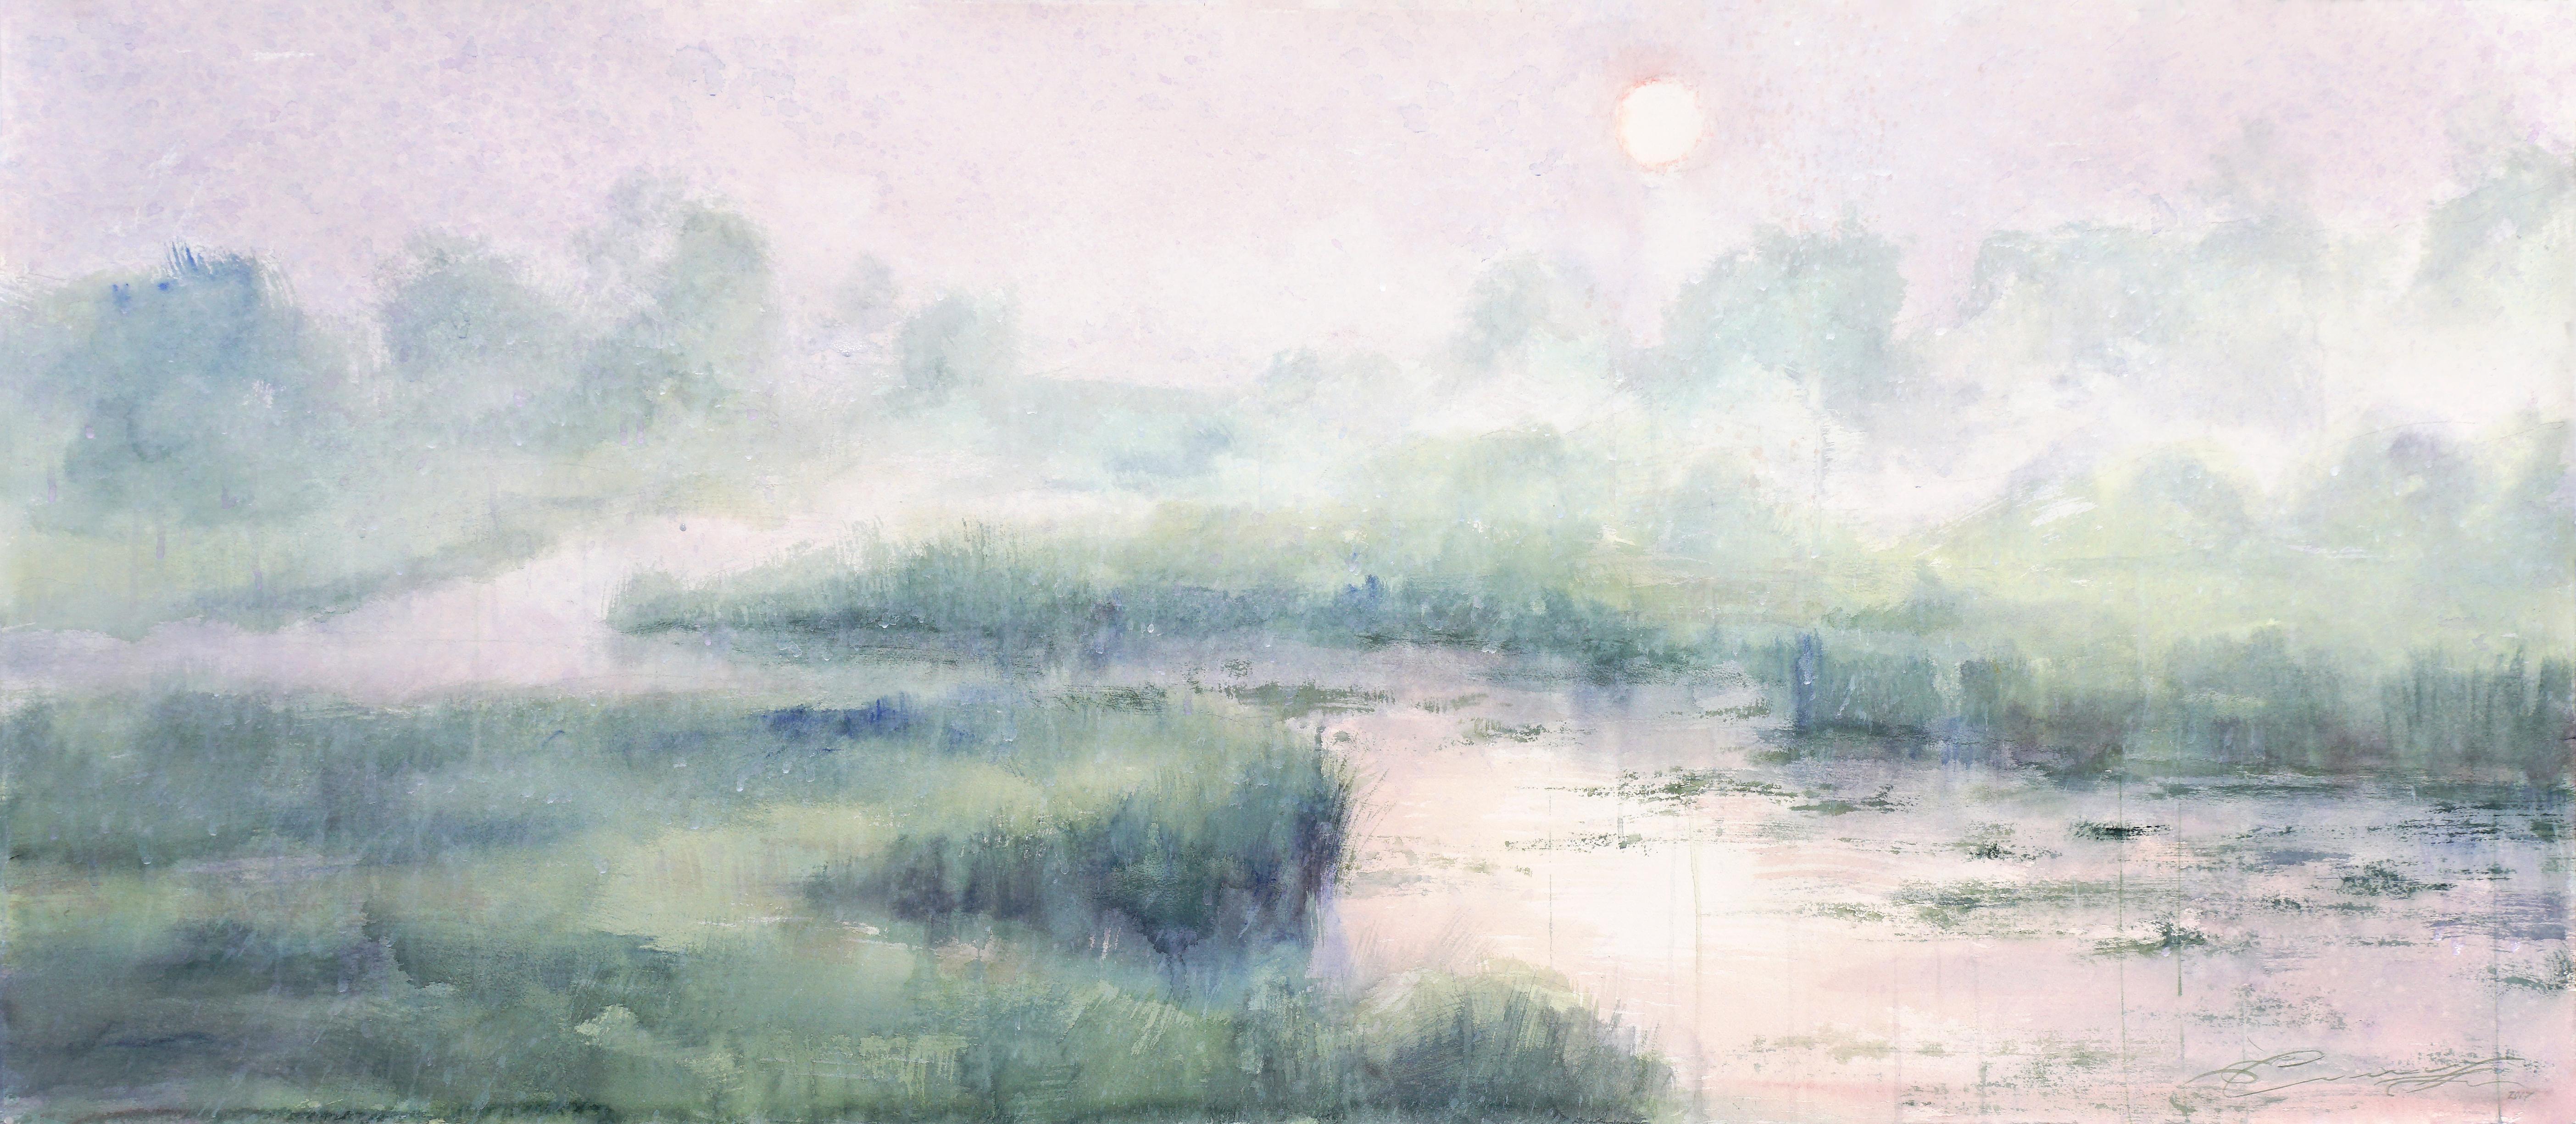 Ekaterina Smirnova Landscape Art – 6:15 Uhr – 21. Jahrhundert, Zeitgenössisch, Landschaft, Aquarell auf Papier